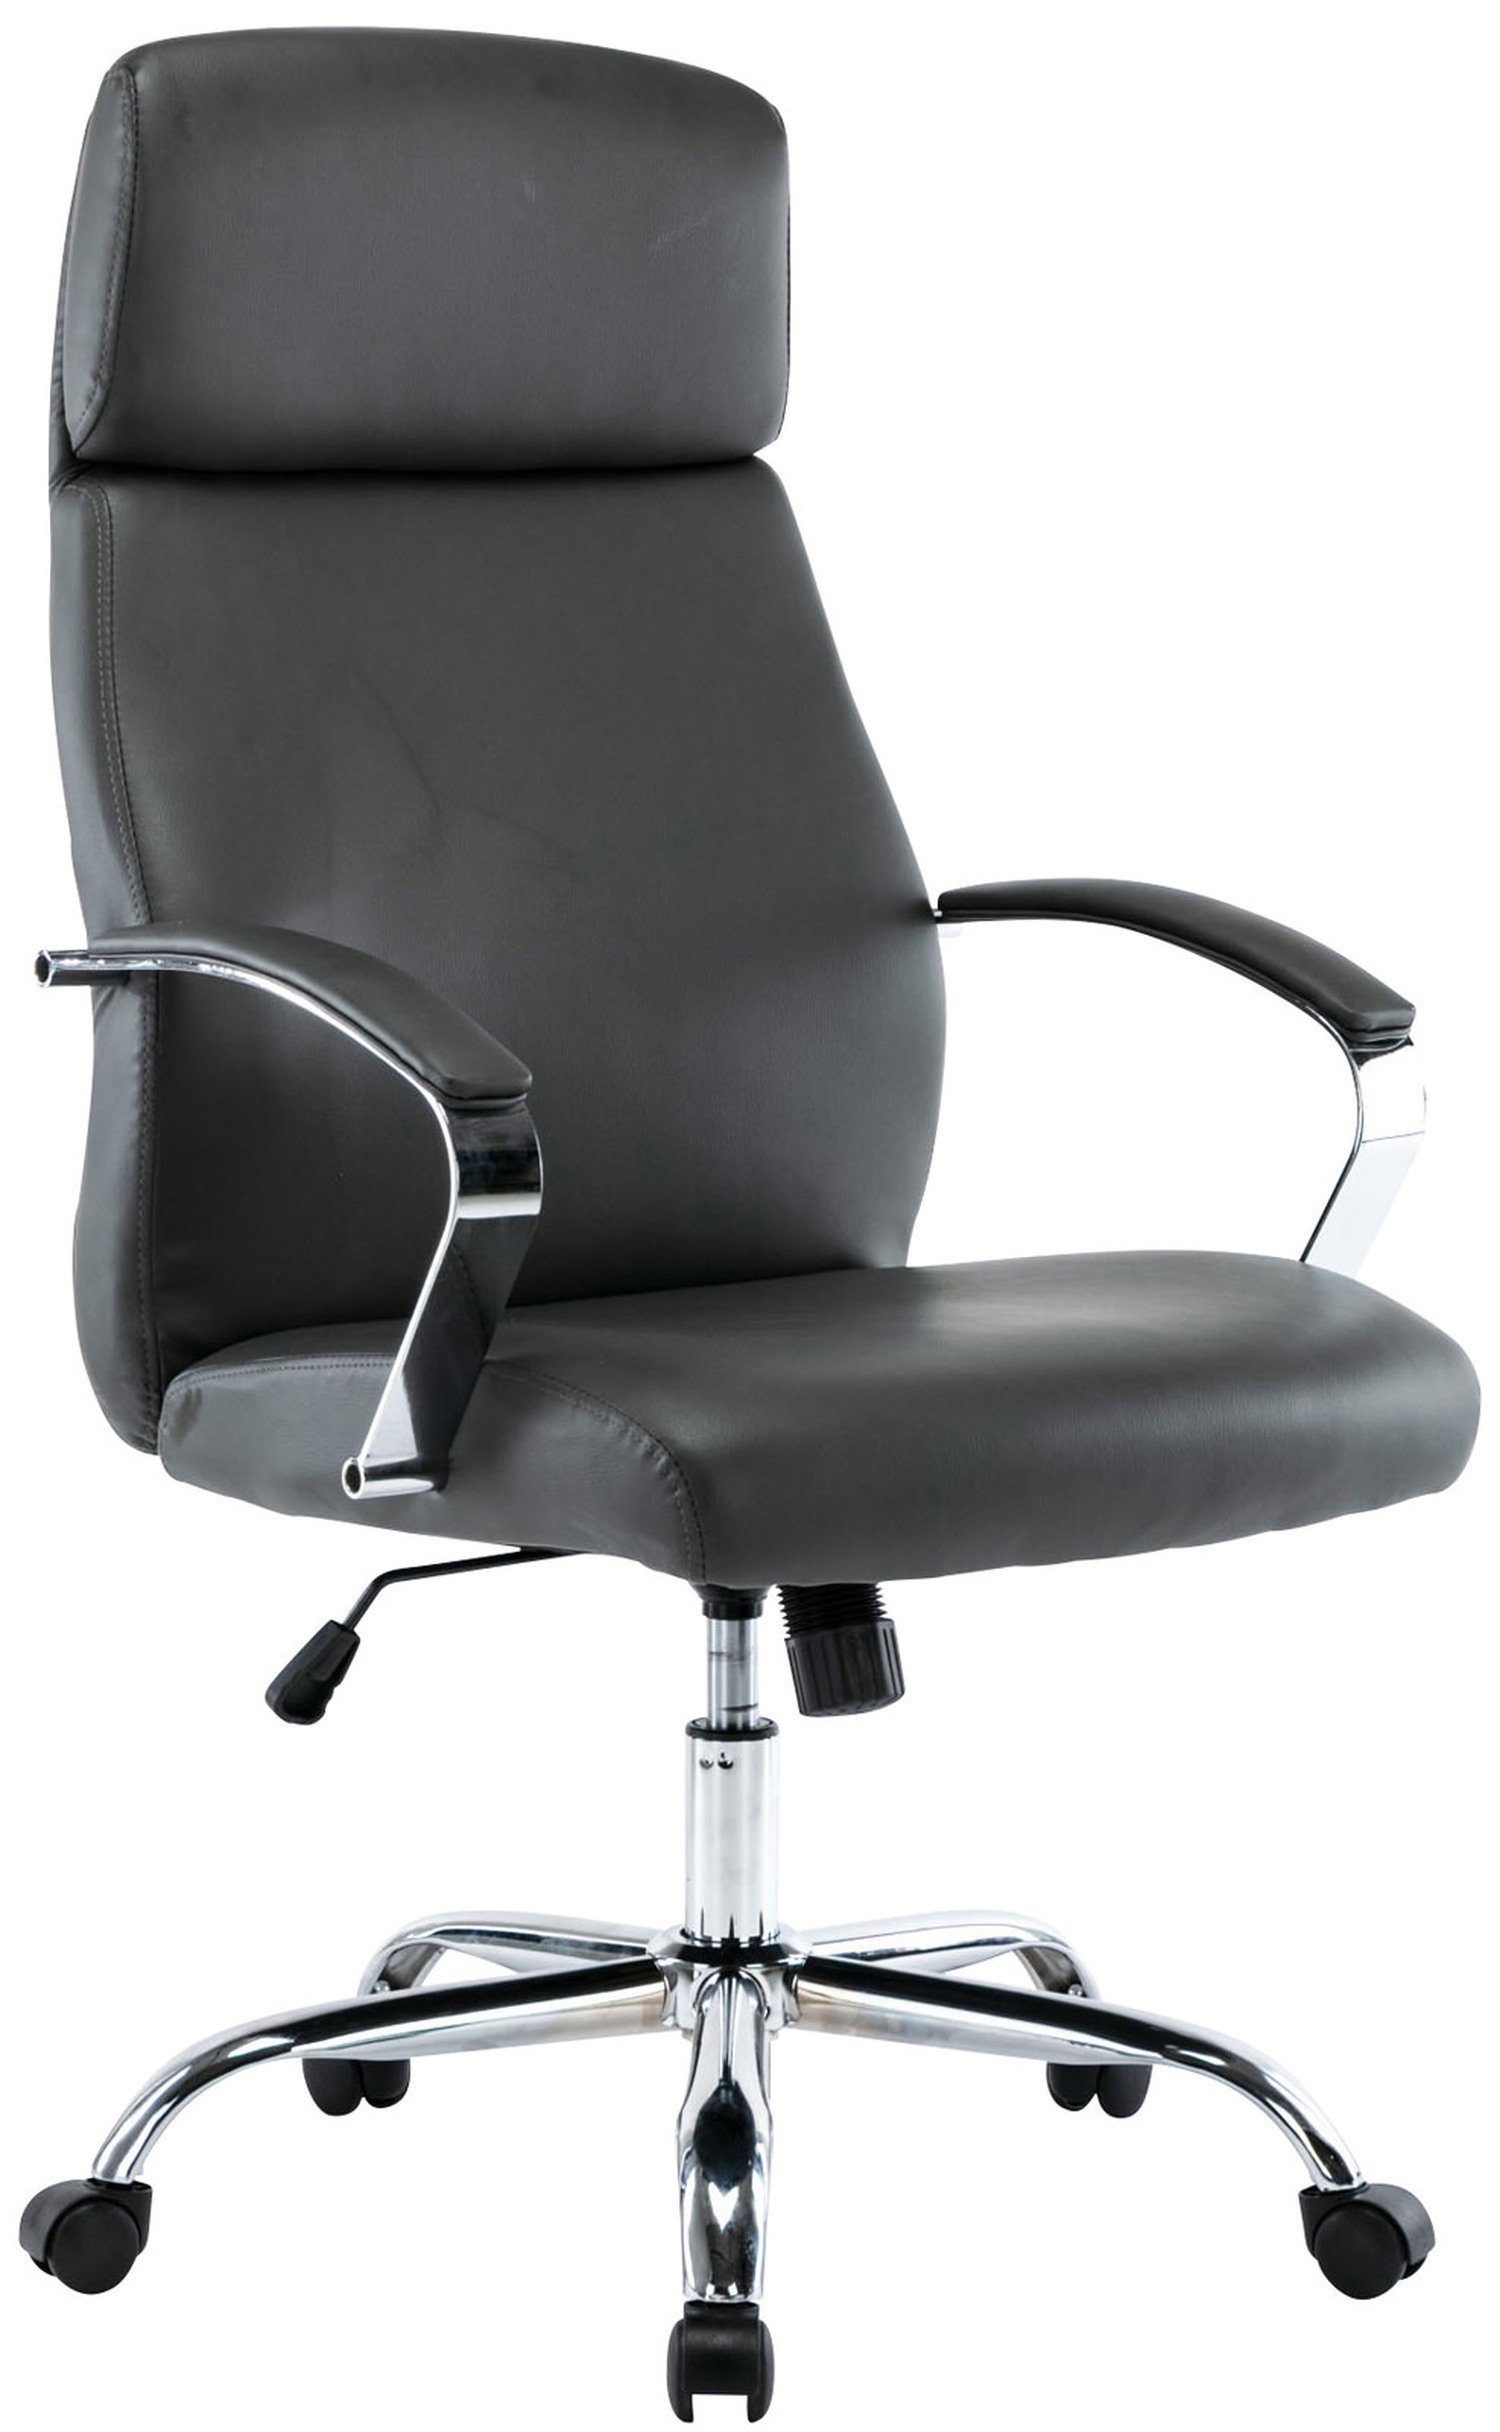 Sitzfläche: höhenverstellbar Kunstleder Drehstuhl, Gestell: TPFLiving - (Schreibtischstuhl, Konferenzstuhl), Fargo und chrom Bürostuhl - Chefsessel, grau bequemer mit 360° drehbar Rückenlehne Metall